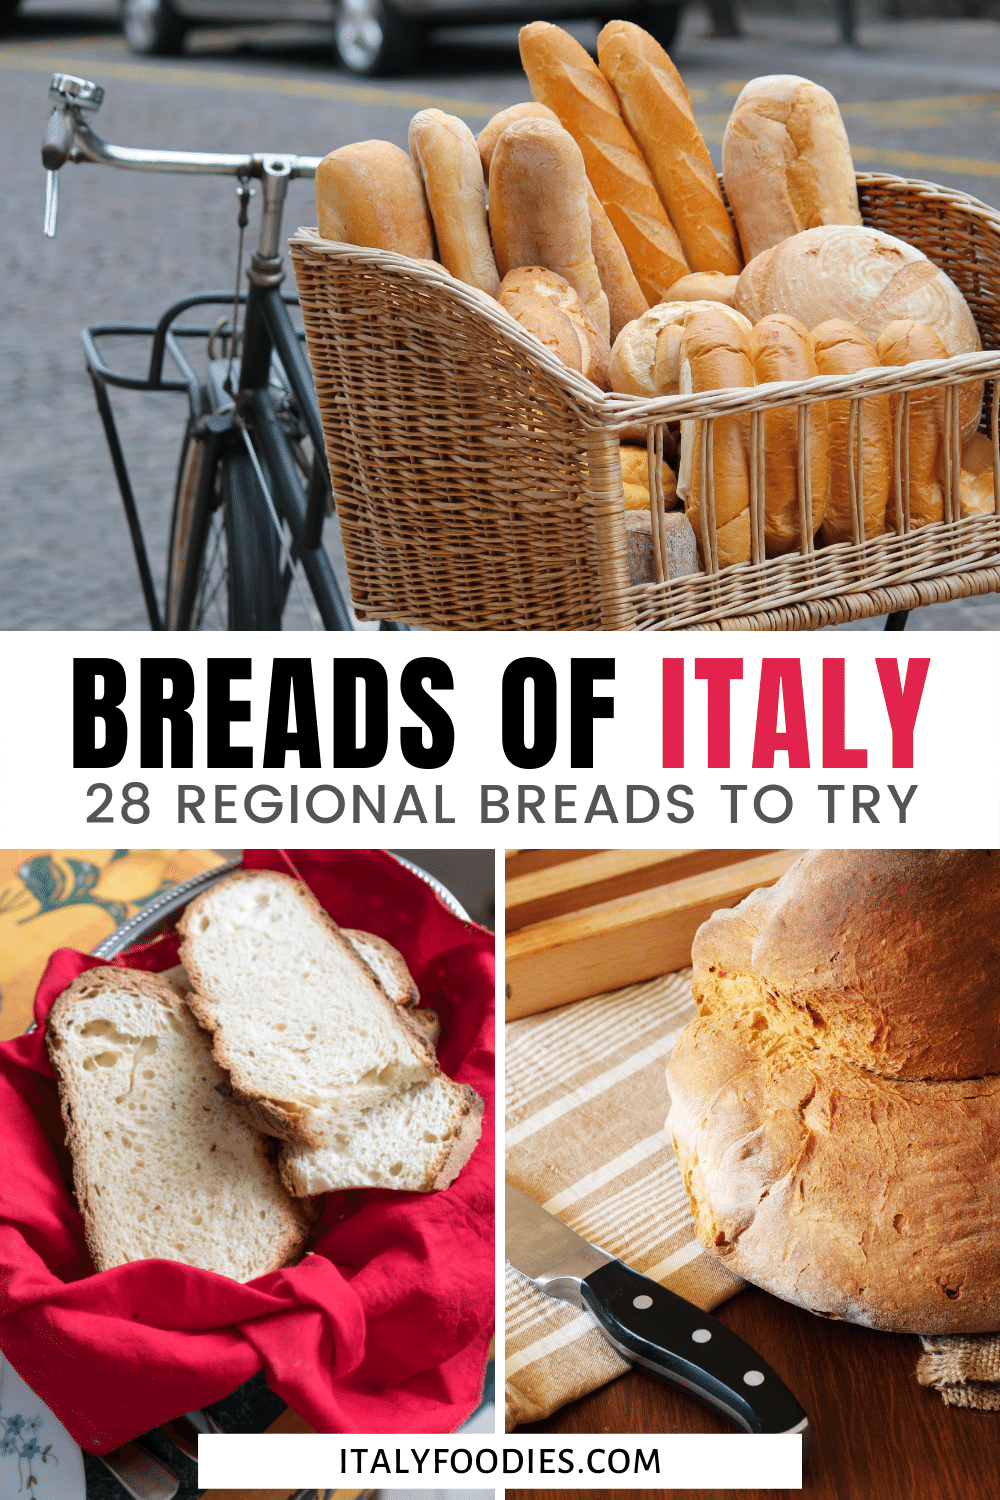 Italian Breads: 28 Regional Types of Italian Bread